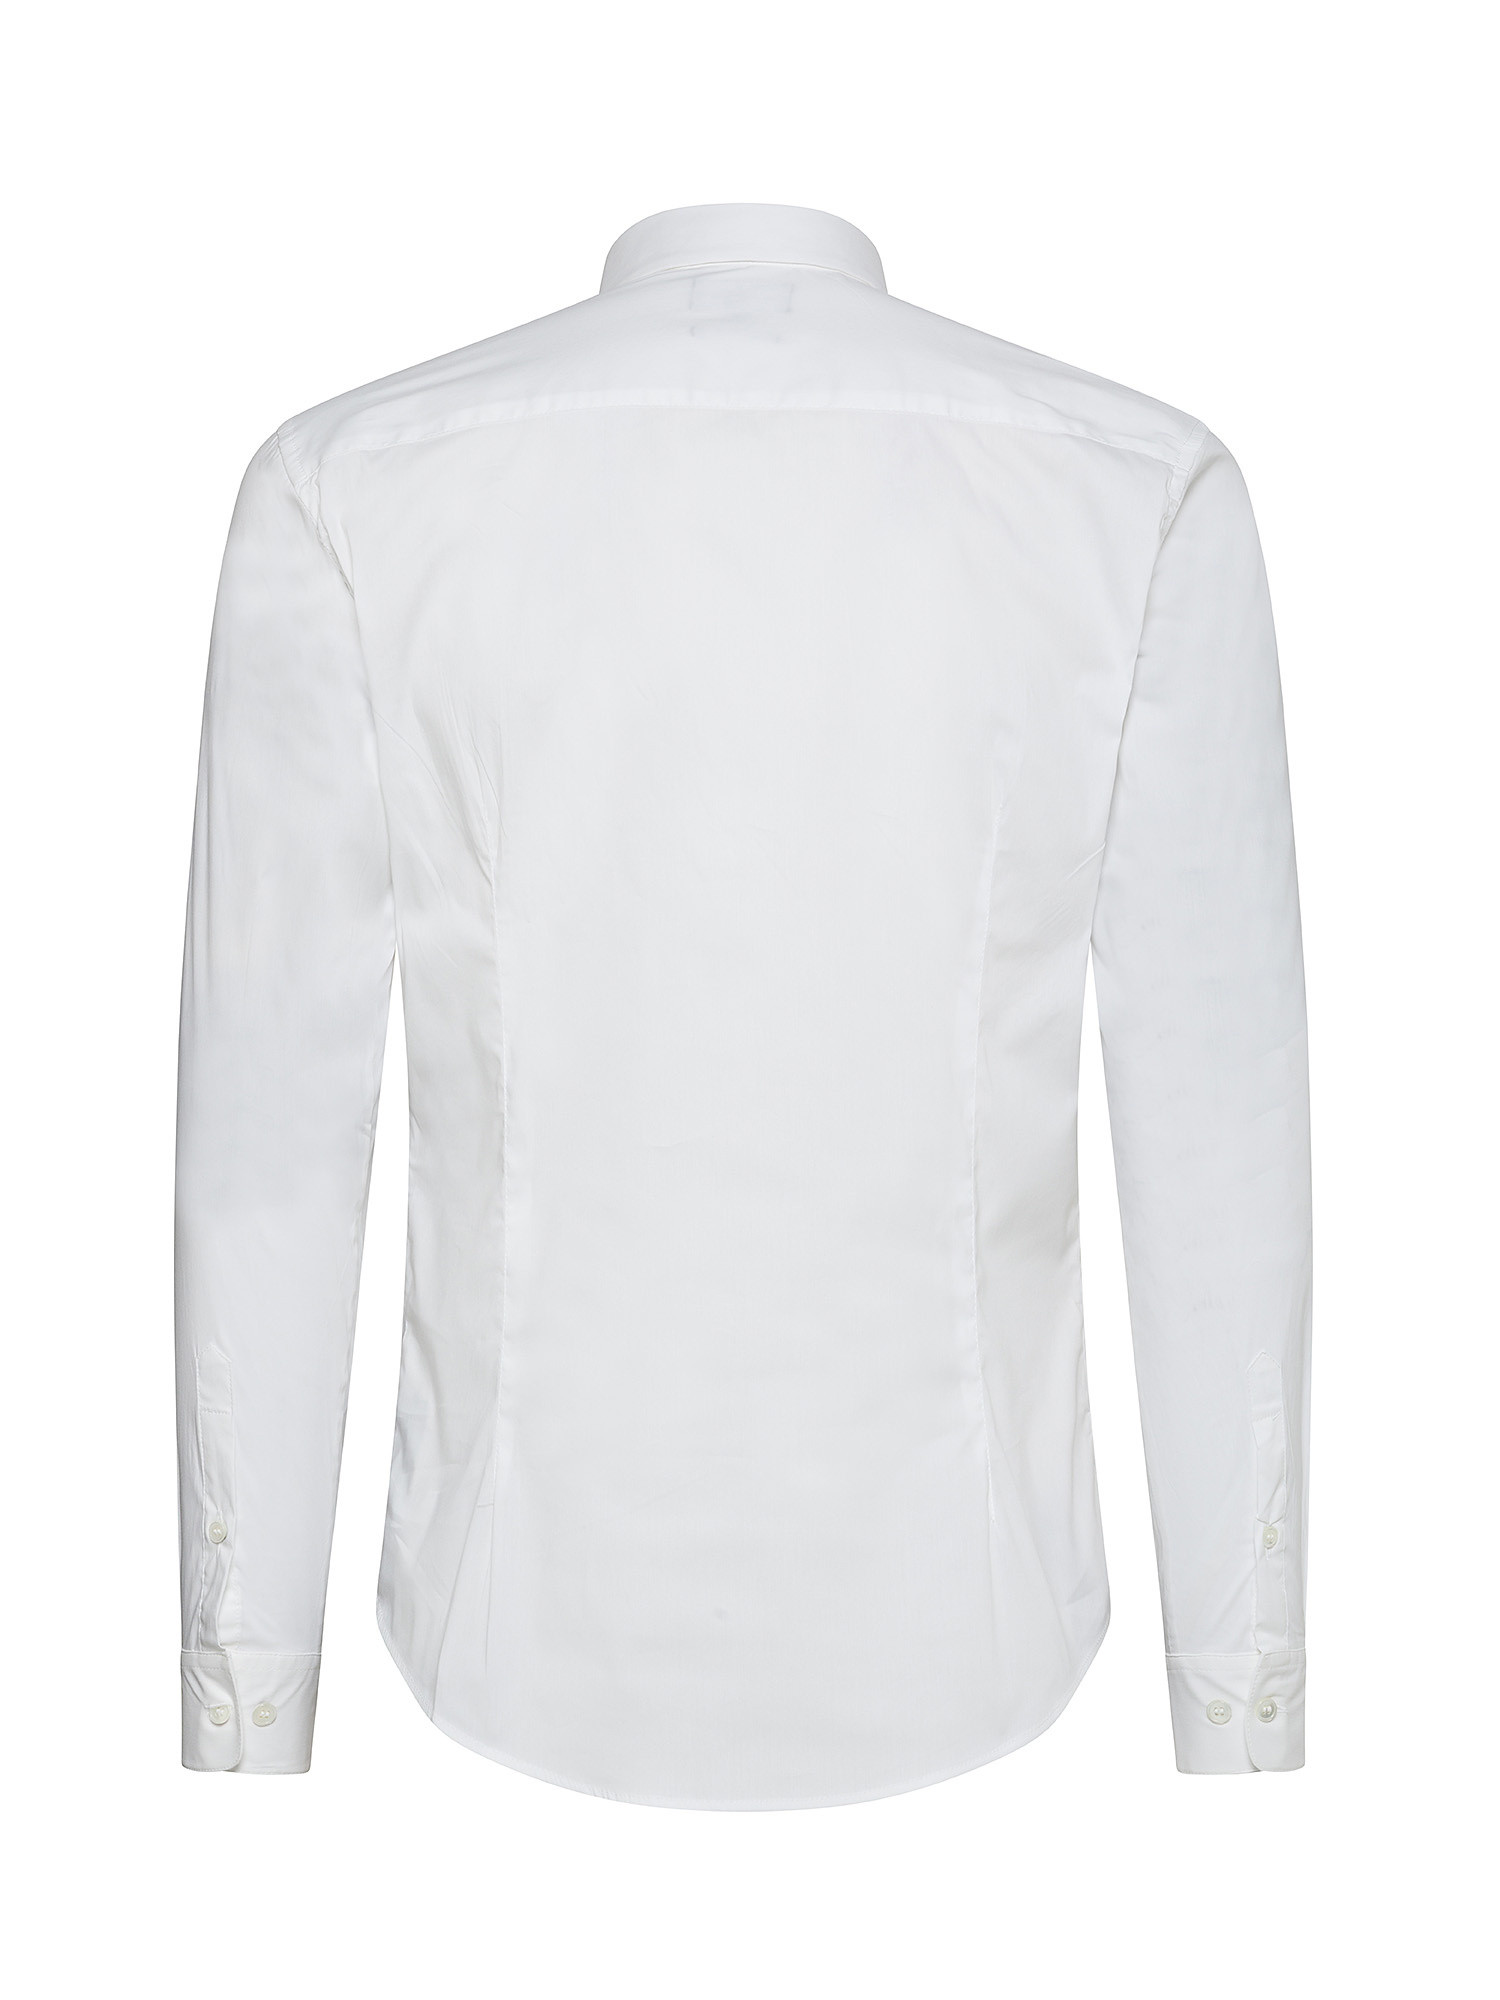 Emporio Armani - Camicia con logo ricamato, Bianco, large image number 2